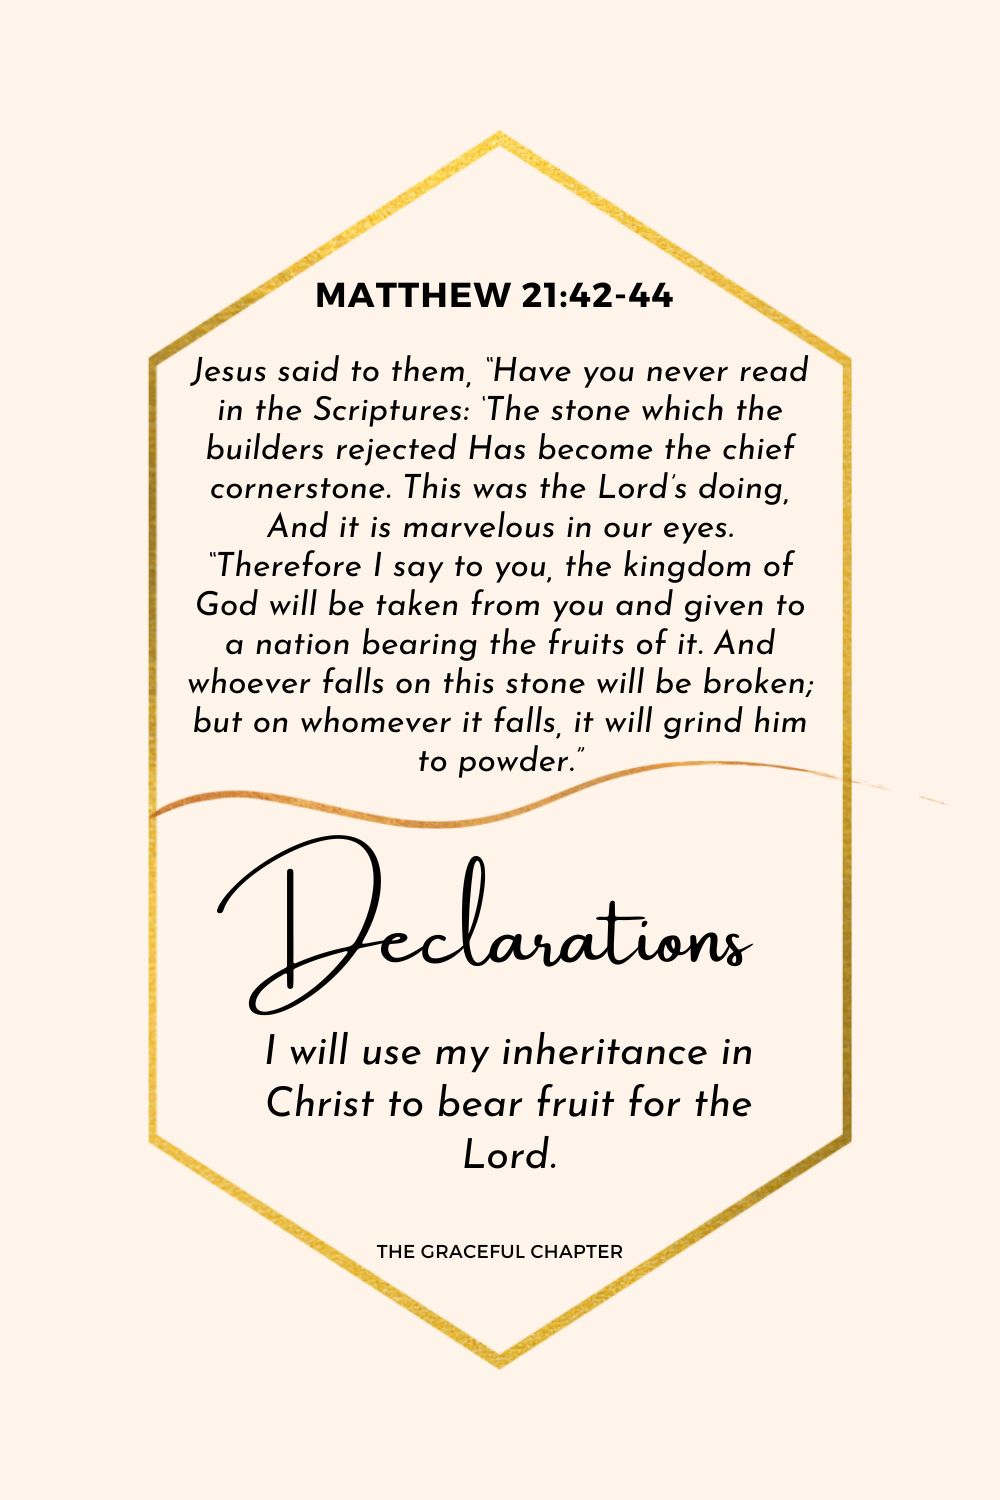 Declaration: Matthew 21:42-44